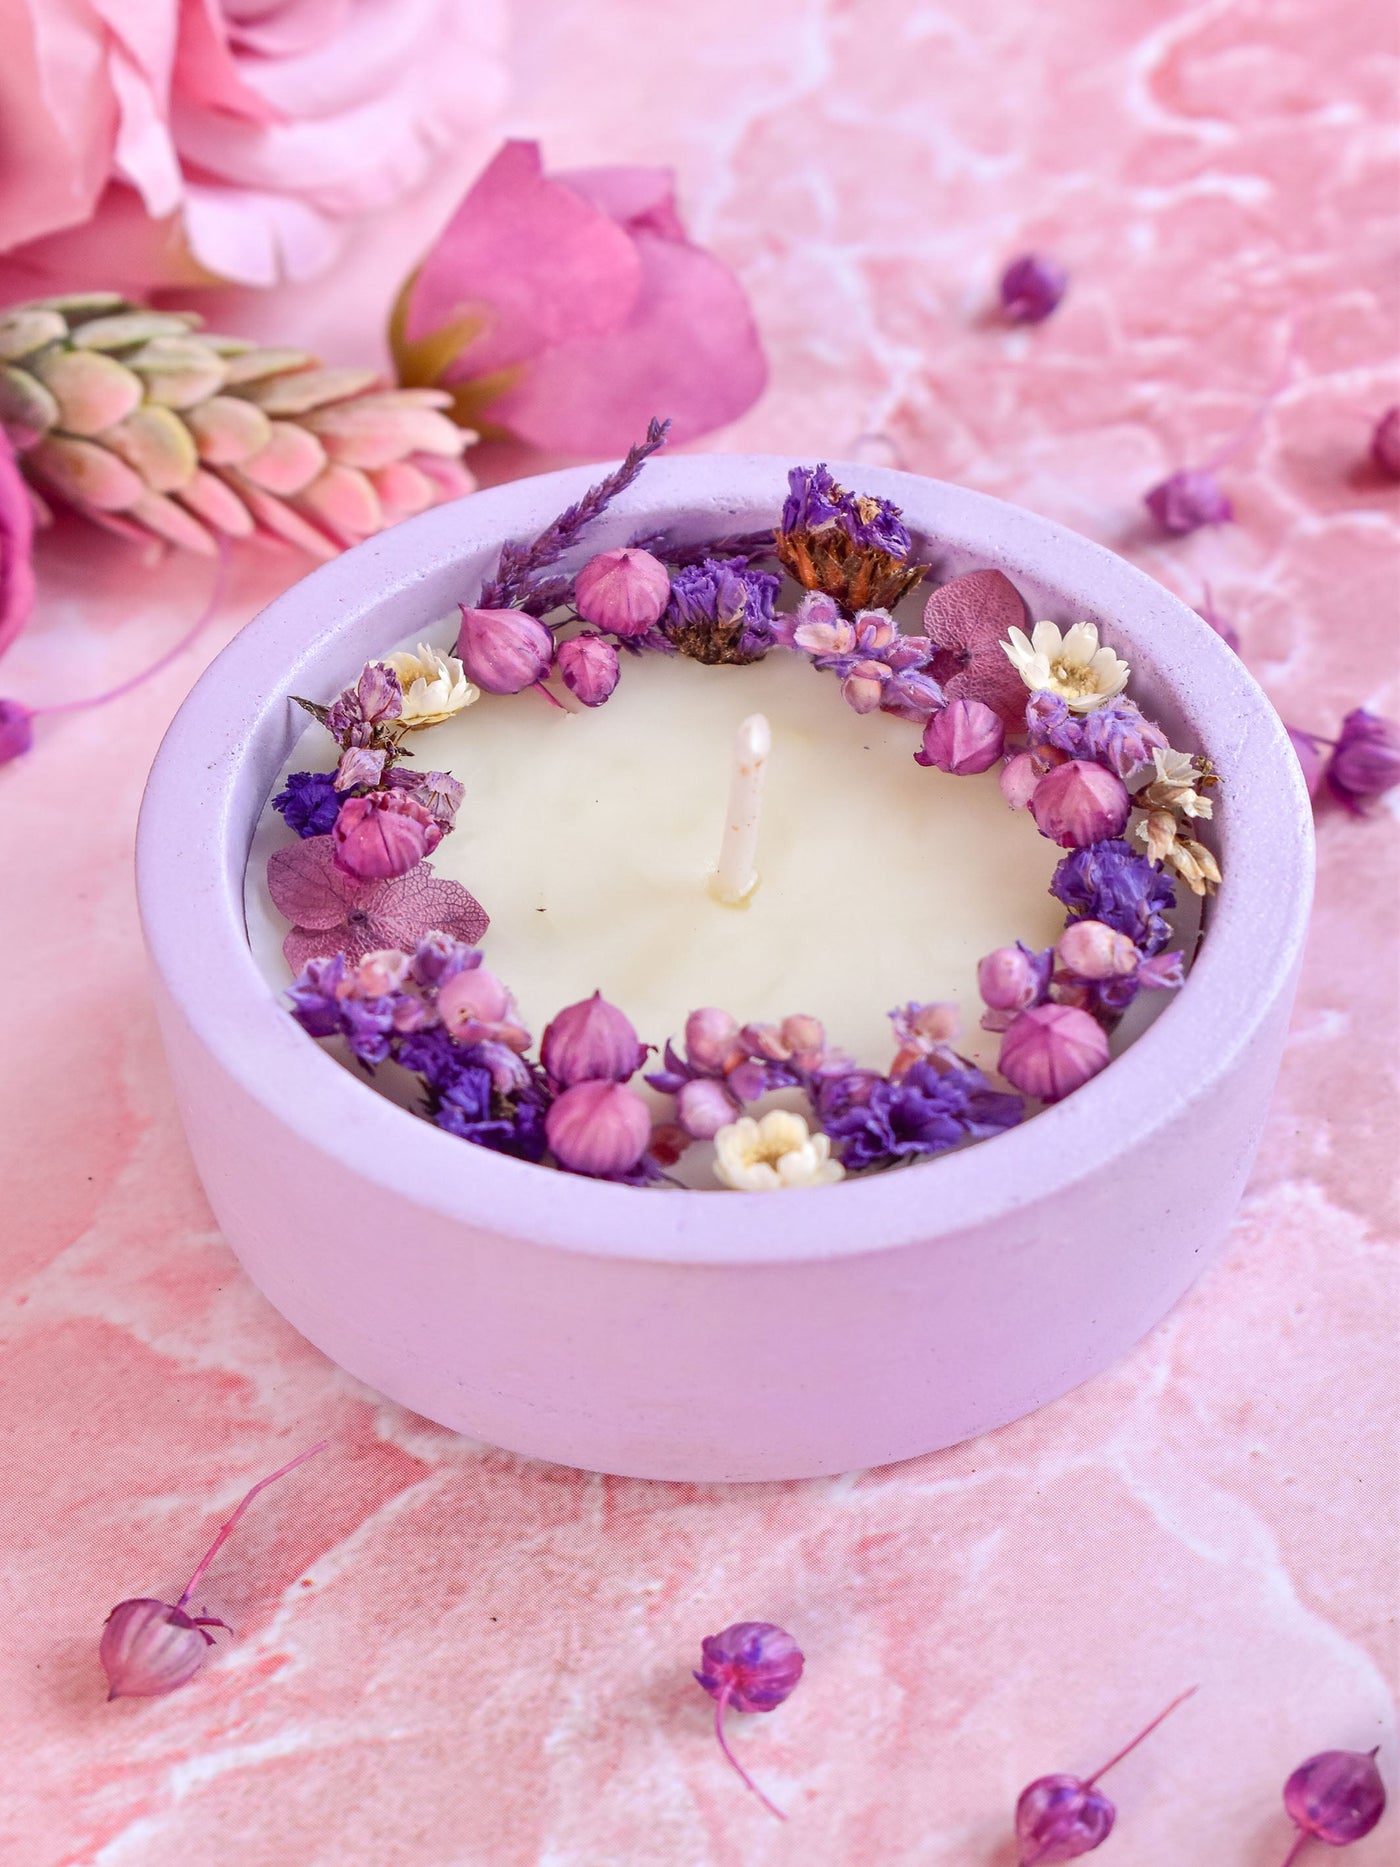 Dryflower & Soy Wax Candle In Purple Concrete Jar